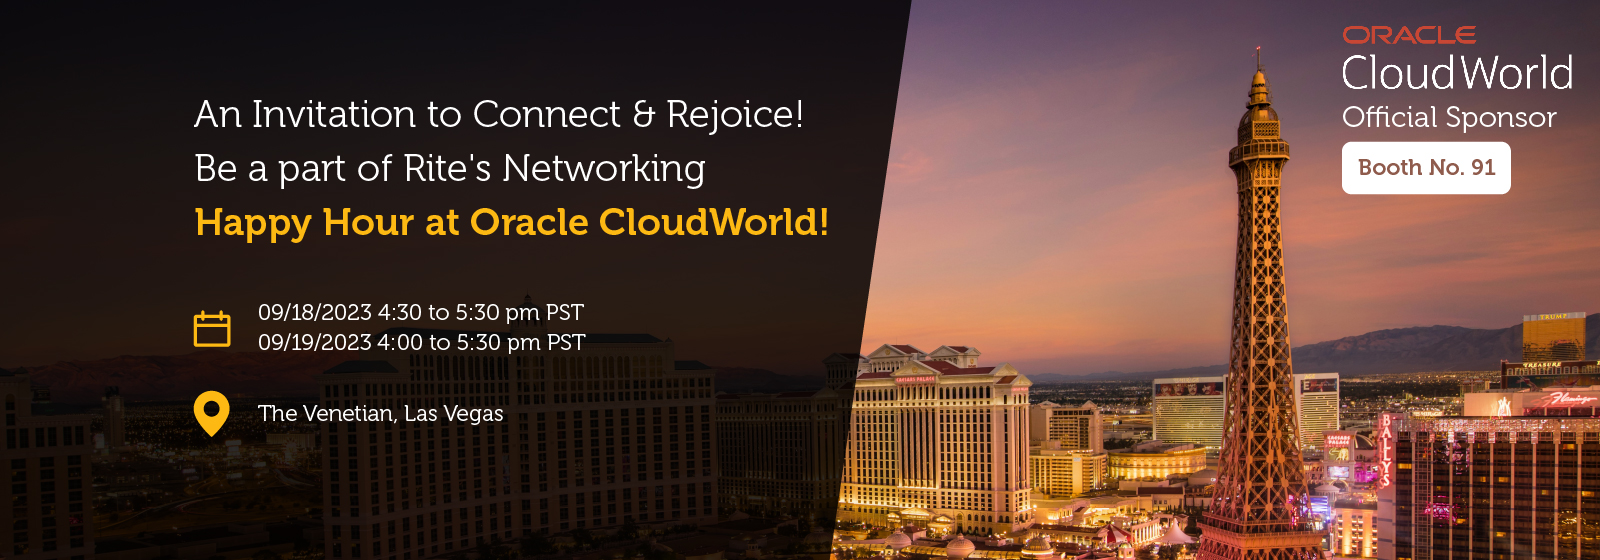 Oracle CloudWorld 2023 at Las Vegas